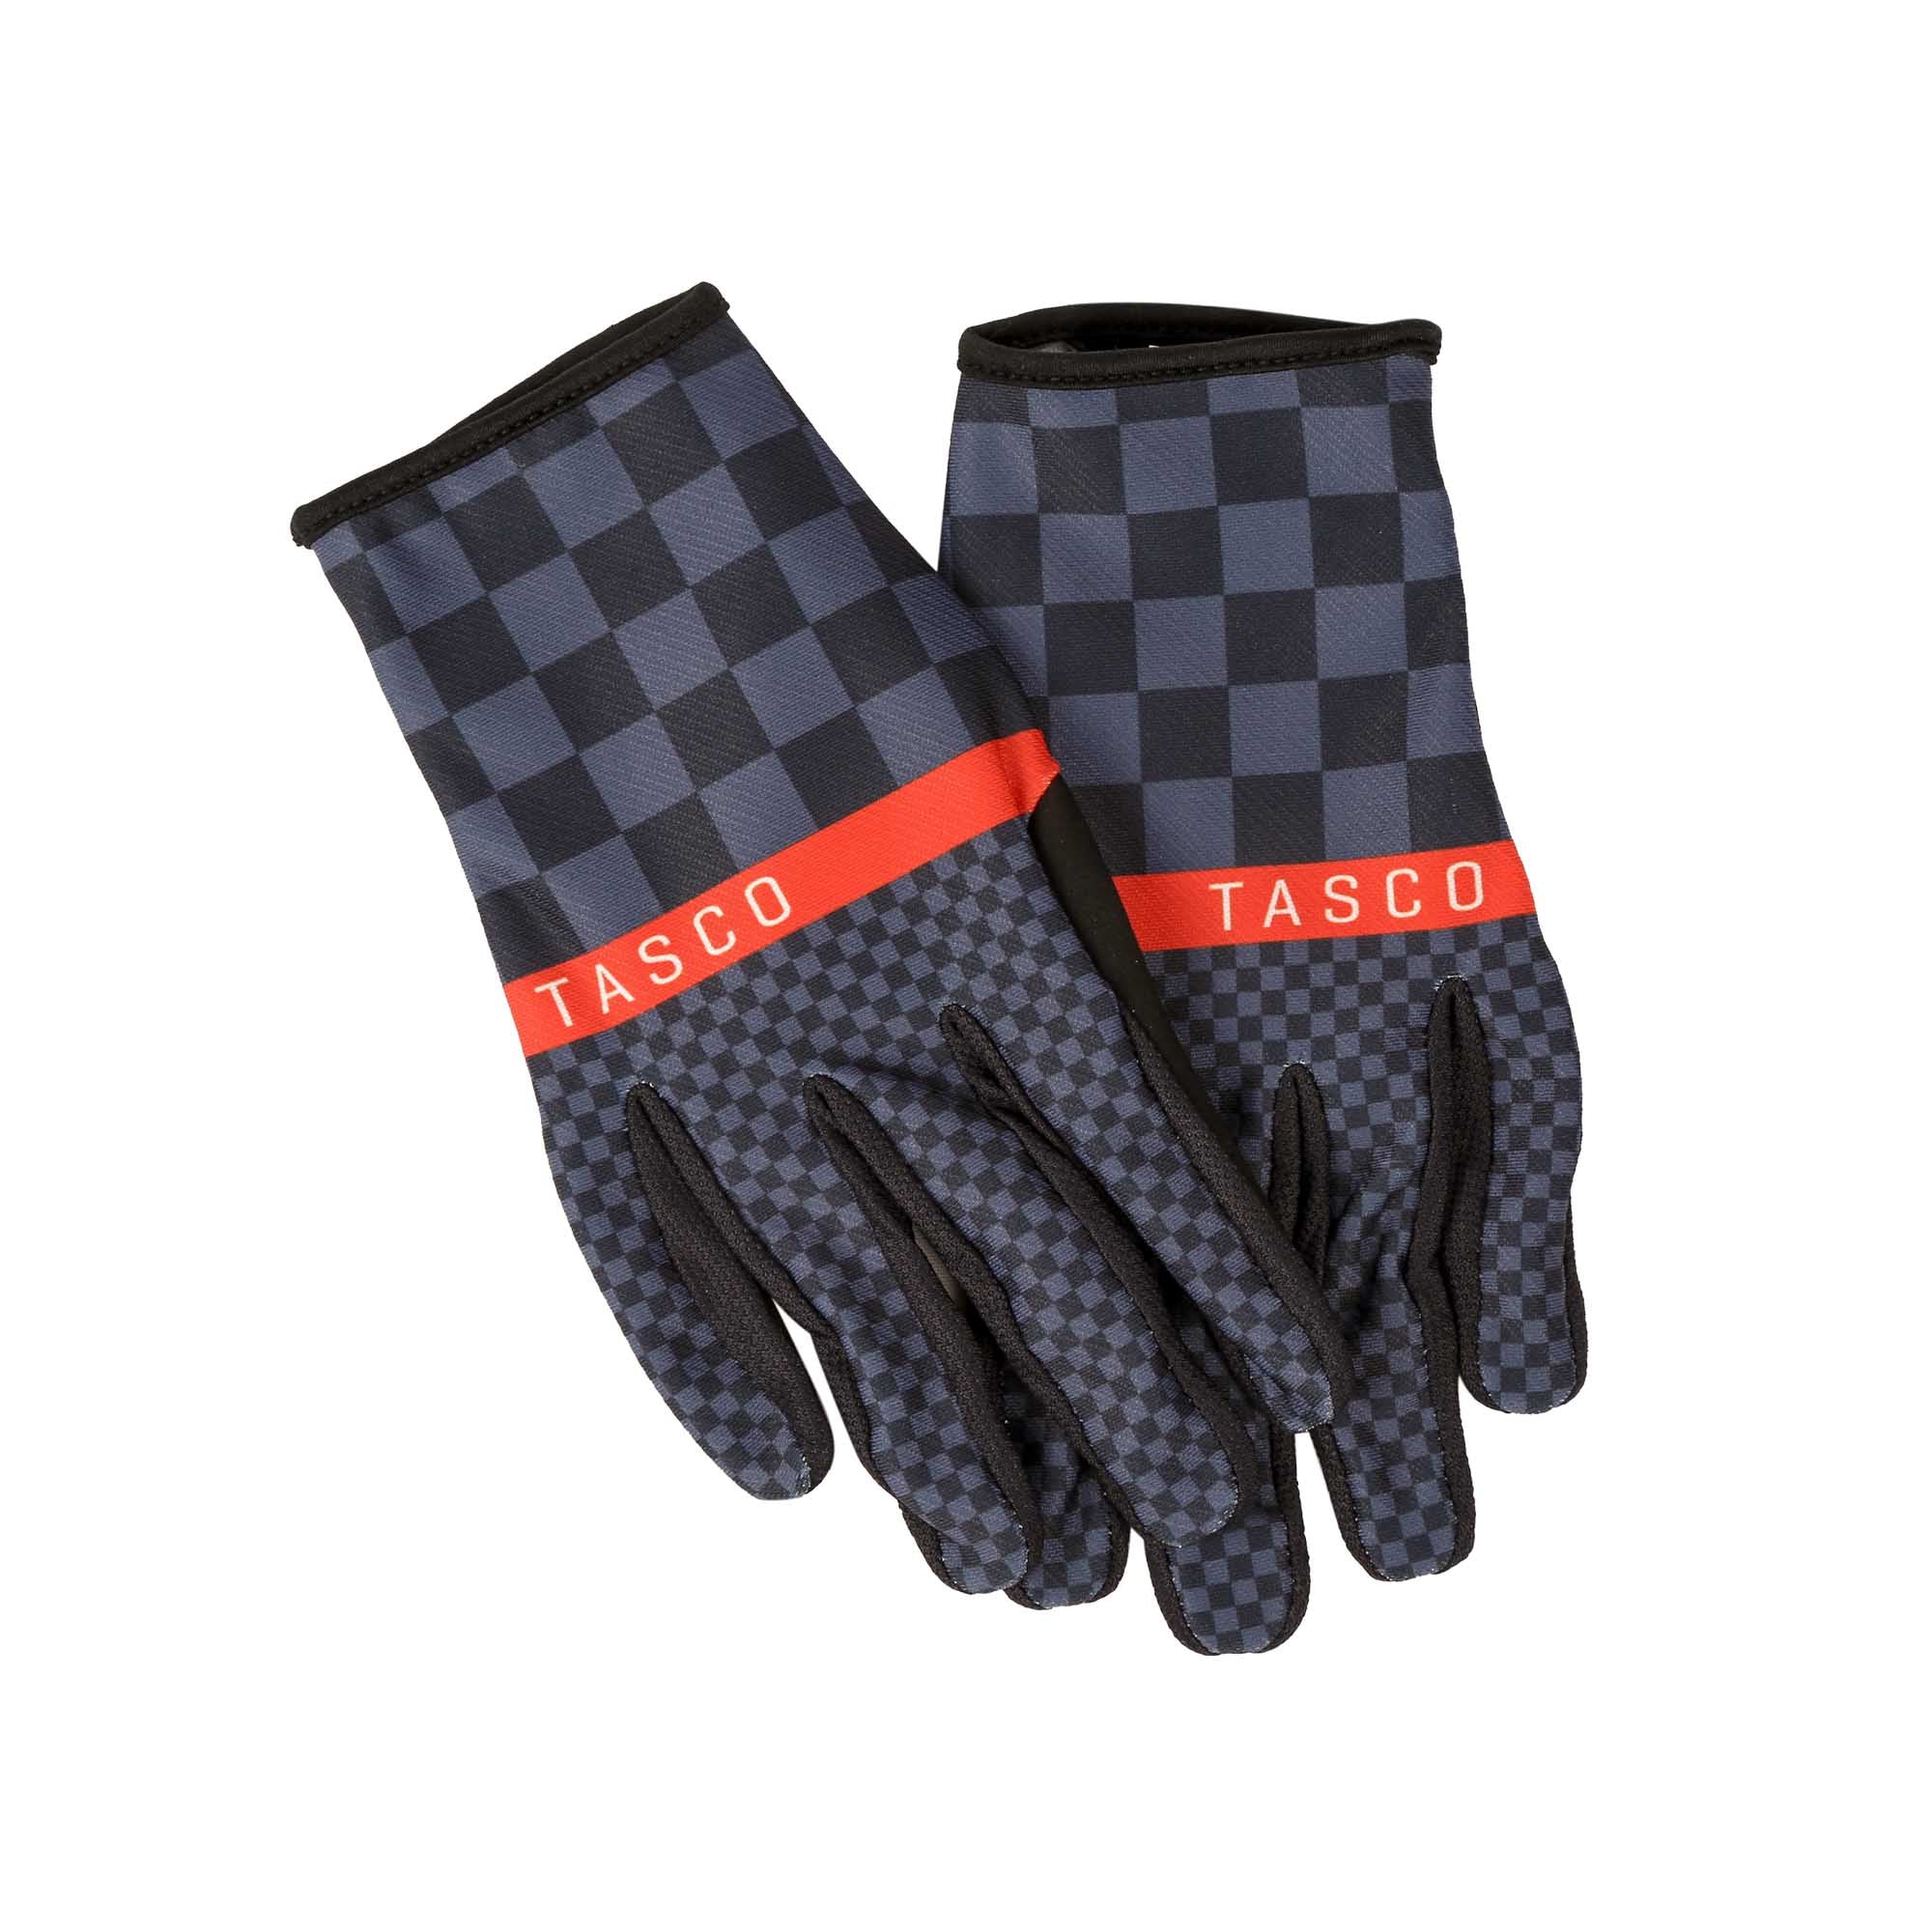 Ridgeline Gloves - Switch